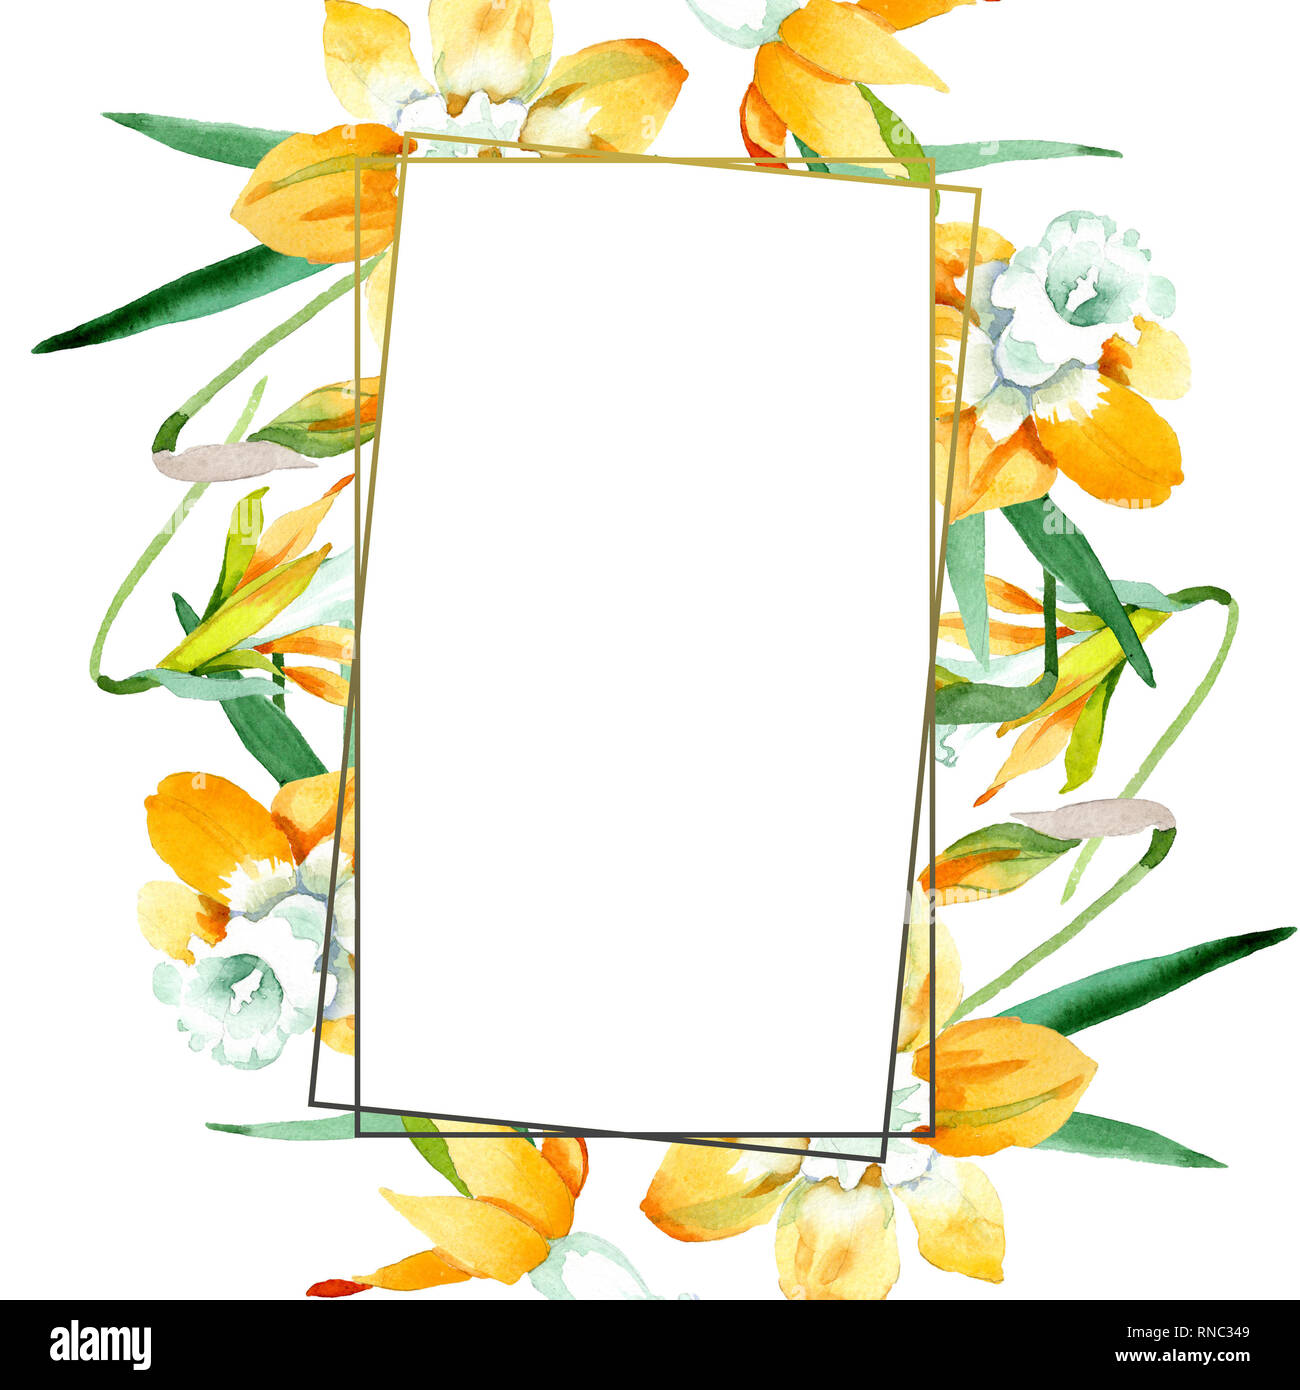 Gelbe Narzissen Blumen botanischen Blume. Aquarell Hintergrund Abbildung. Rahmenlinie ornament Quadrat. Stockfoto